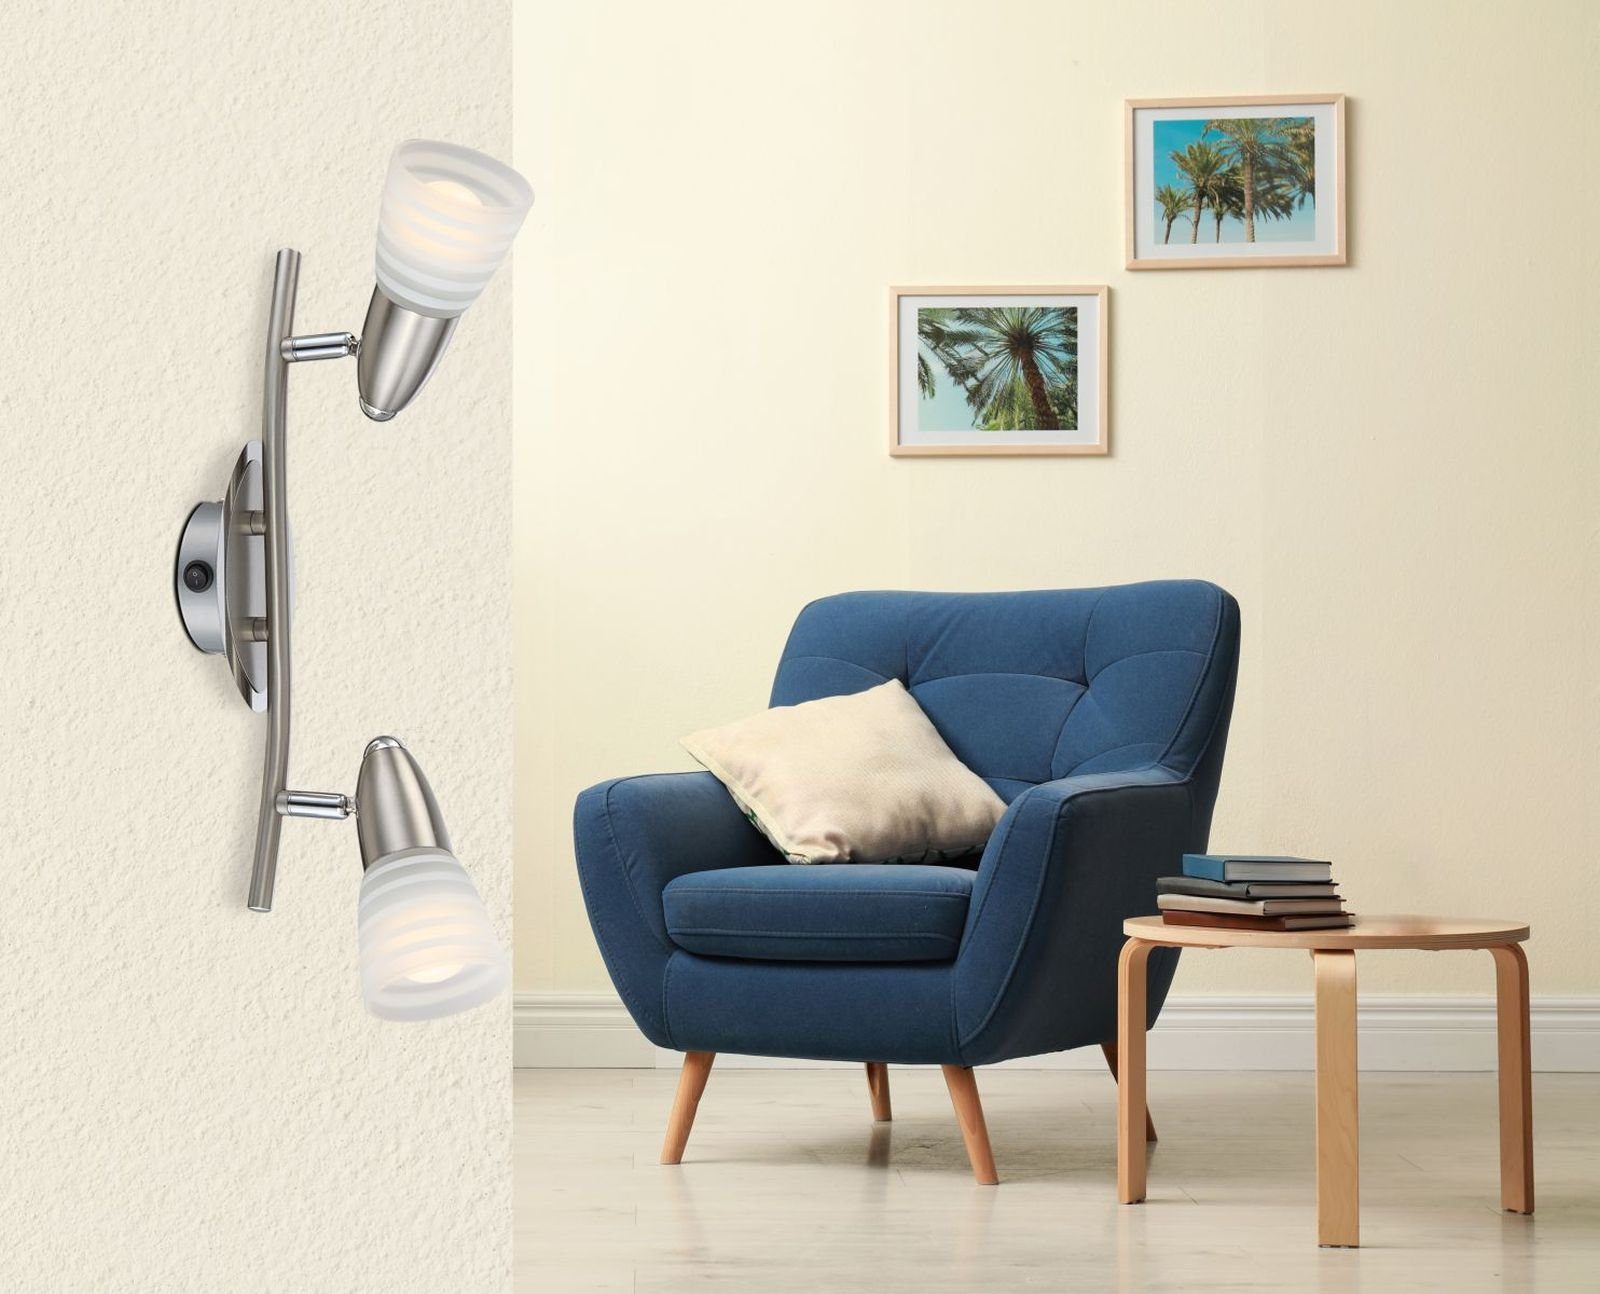 GLOBO Wohnzimmer mit Wandleuchte Globo Innen Wandleuchte Wandlampe Schalter